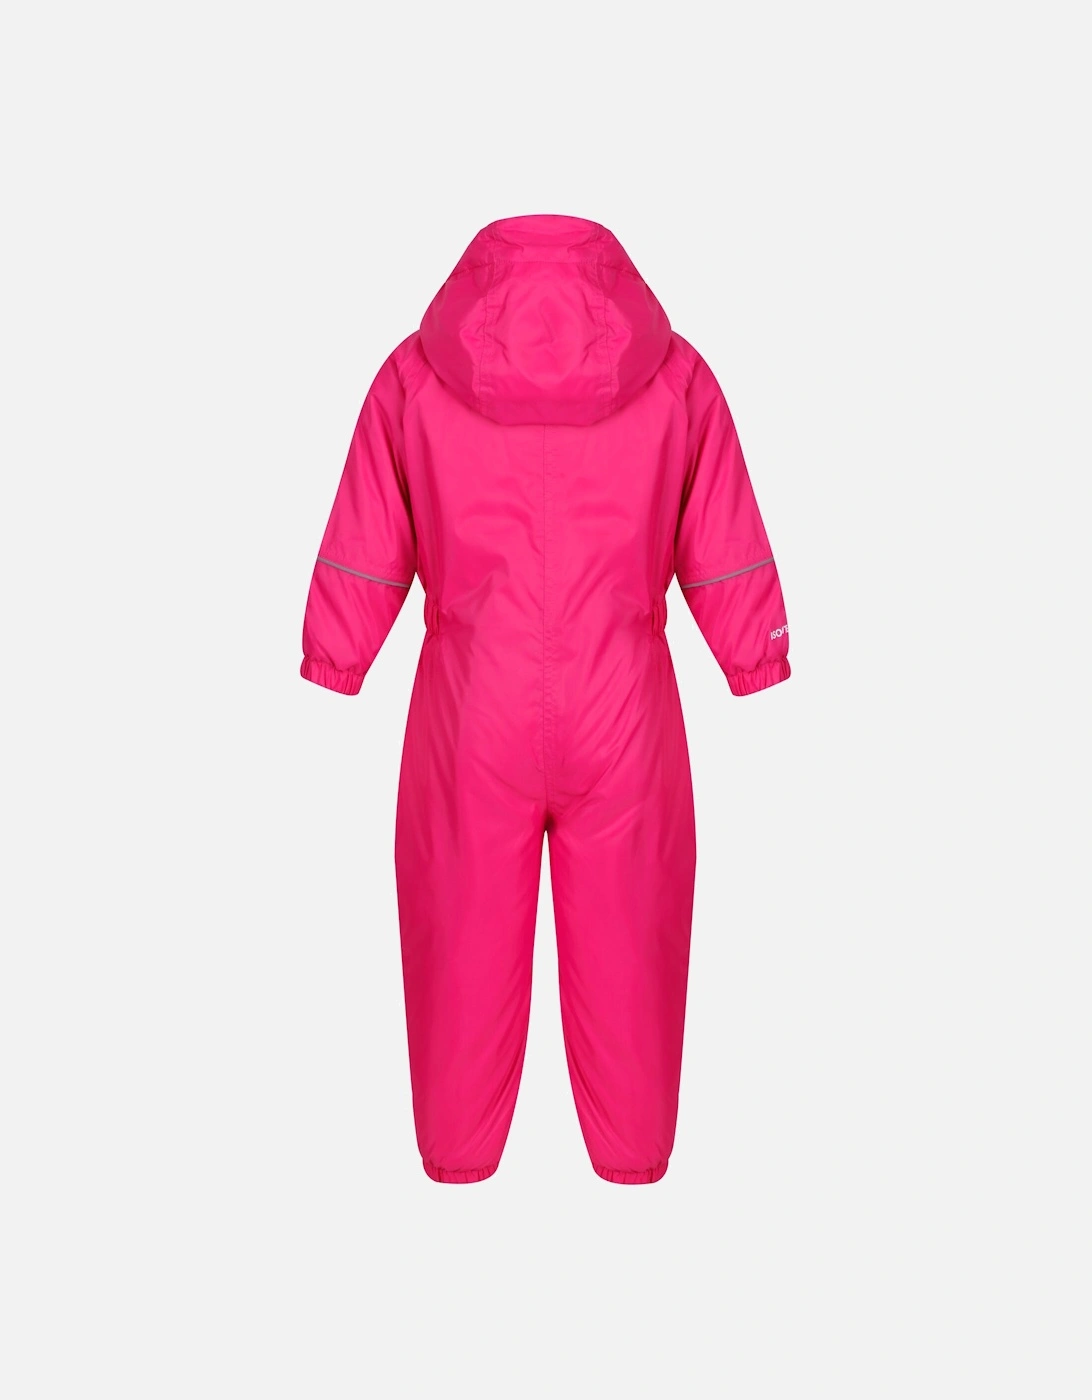 Childrens/Kids Splash-it Puddle Suit